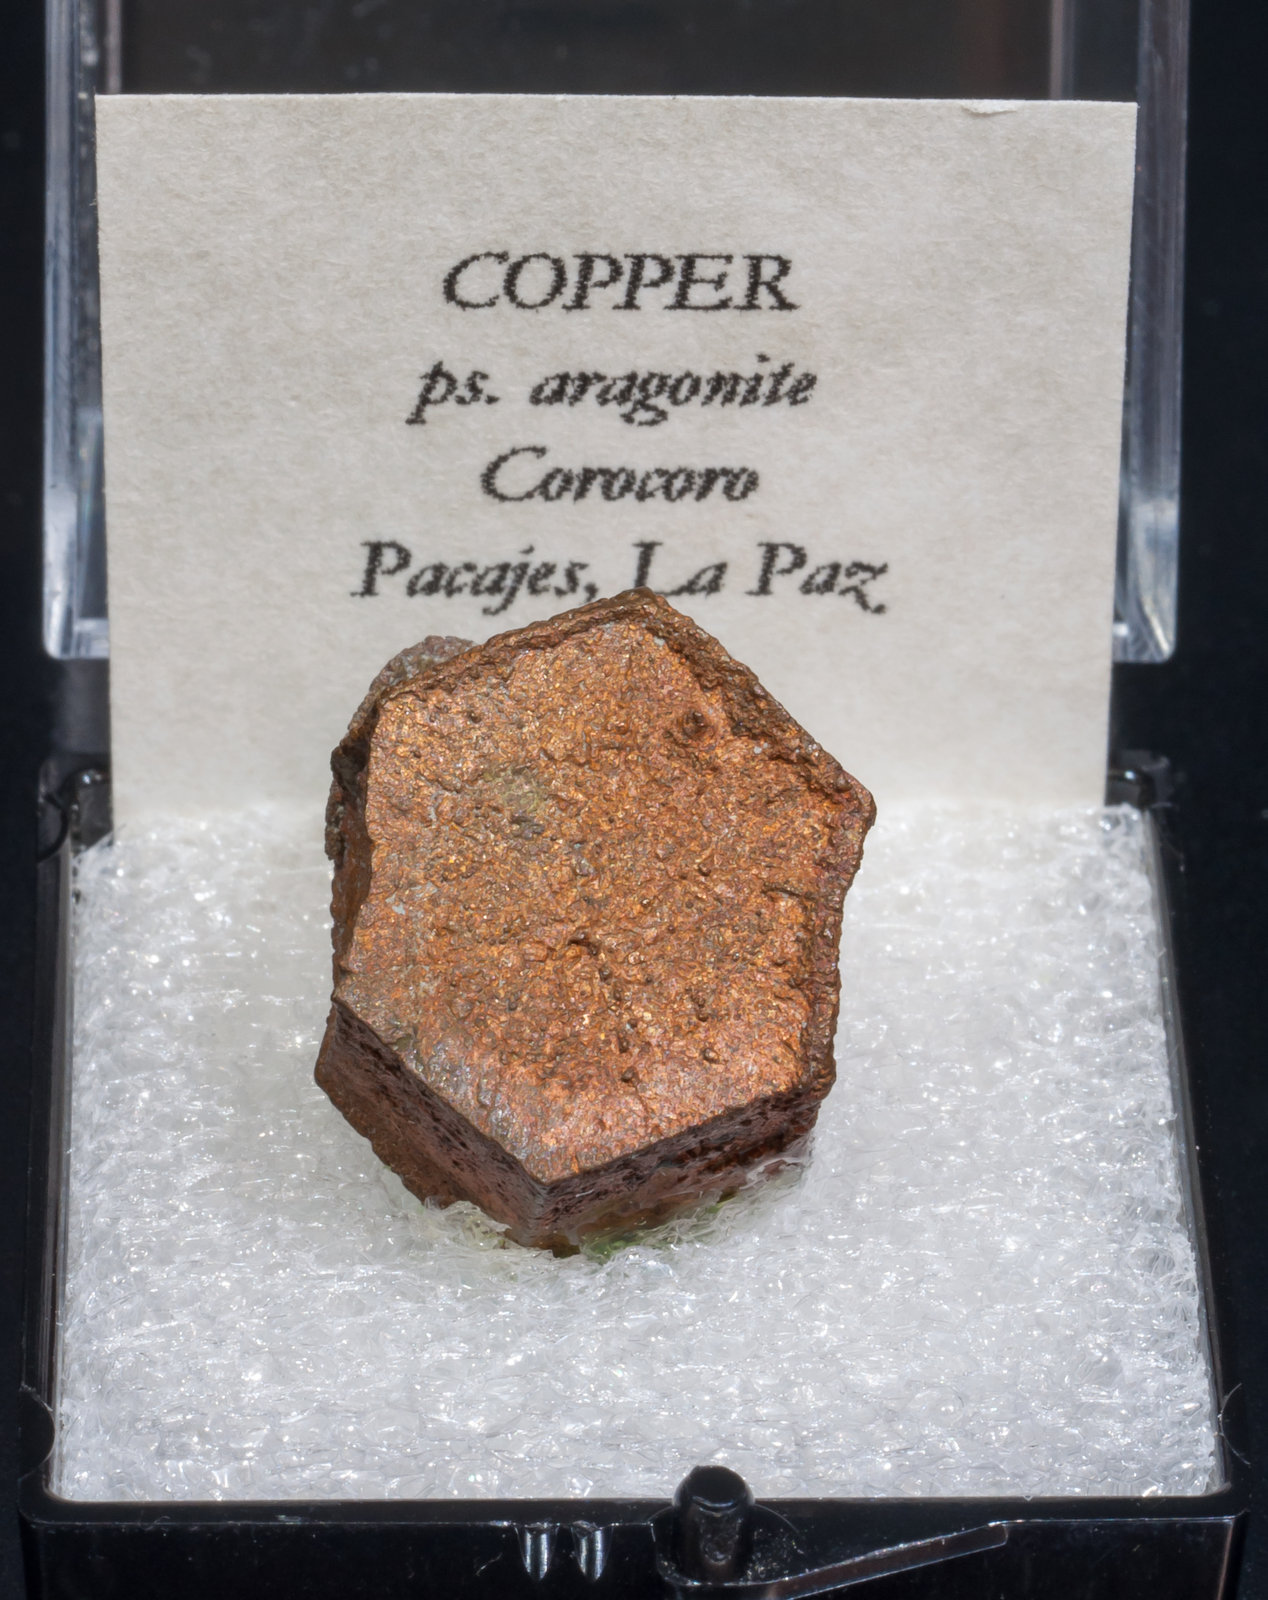 specimens/s_imagesAJ1/Copper-TF12AJ1f1.jpg